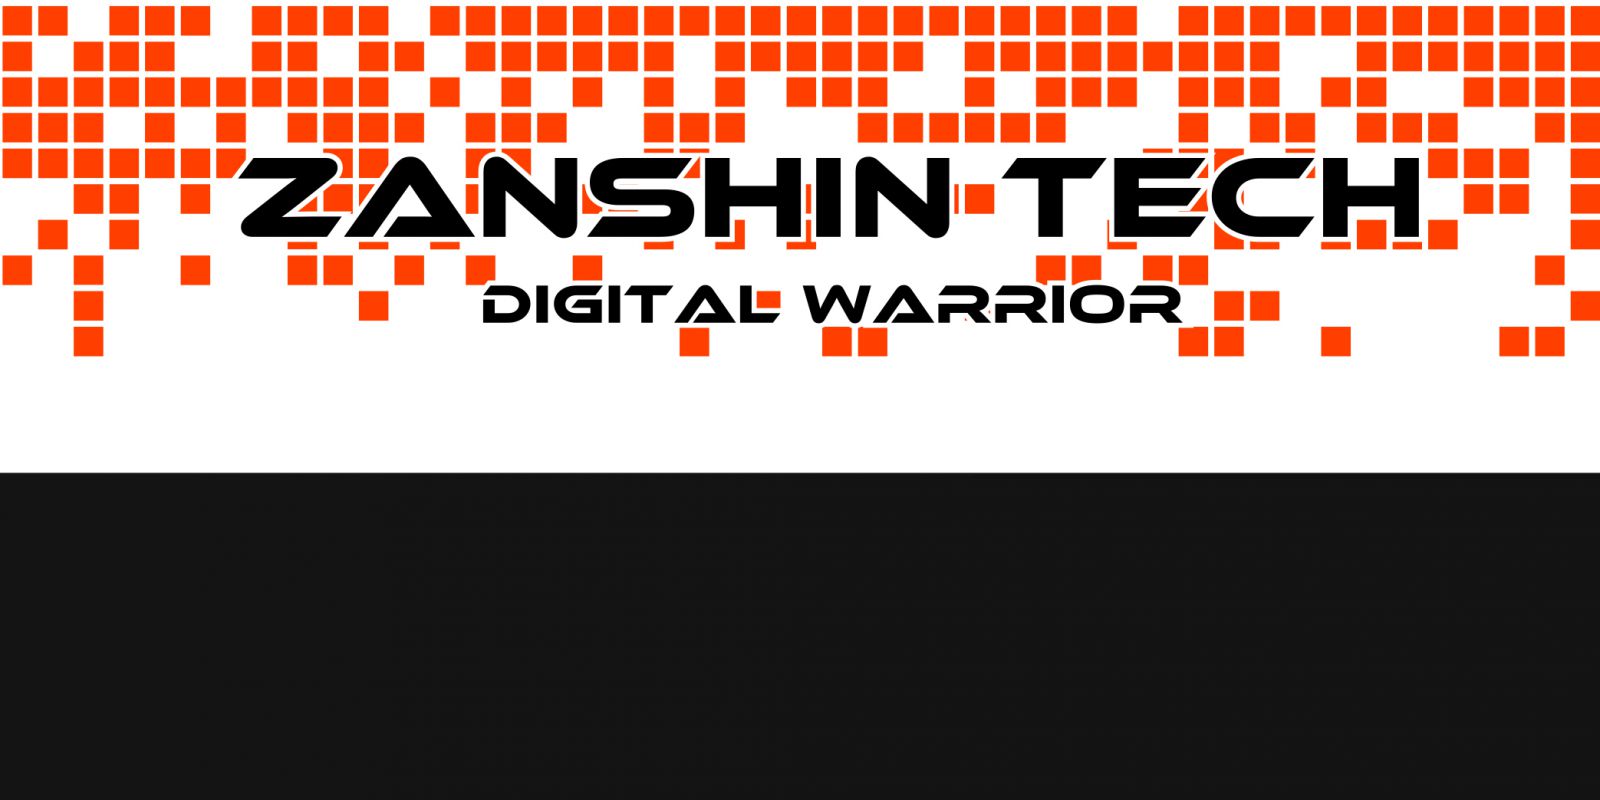 Zanshin tech: guerrieri digitali contro cyberbulli